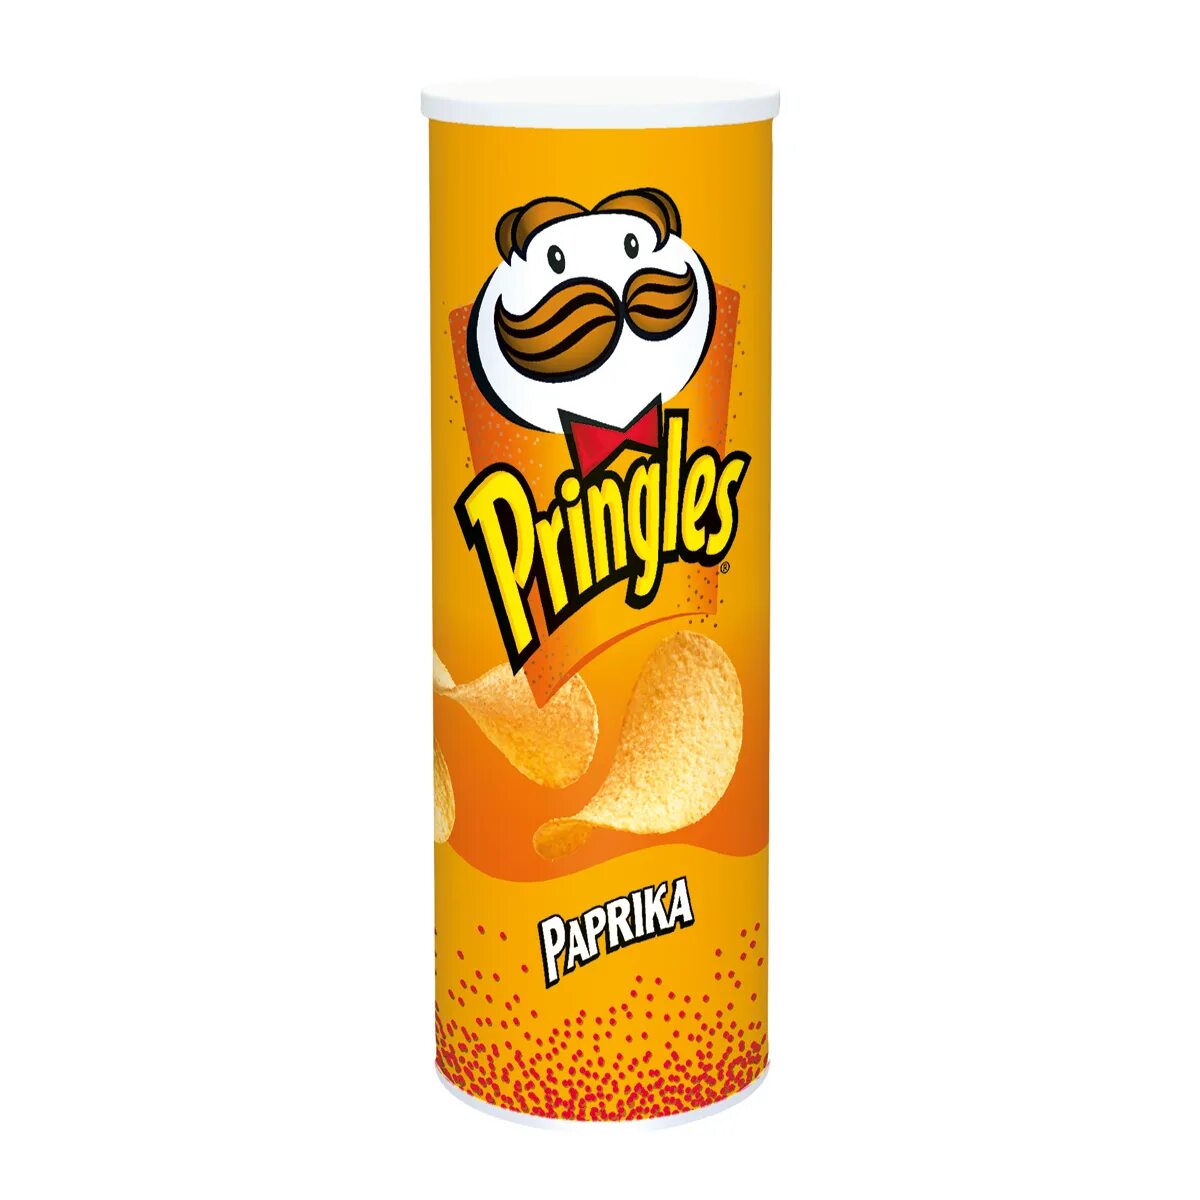 Спринглс. Принглс паприка. Pringles Classic paprika. Чипсы Pringles паприка. Чипсы Pringles Classic paprika 165 г.